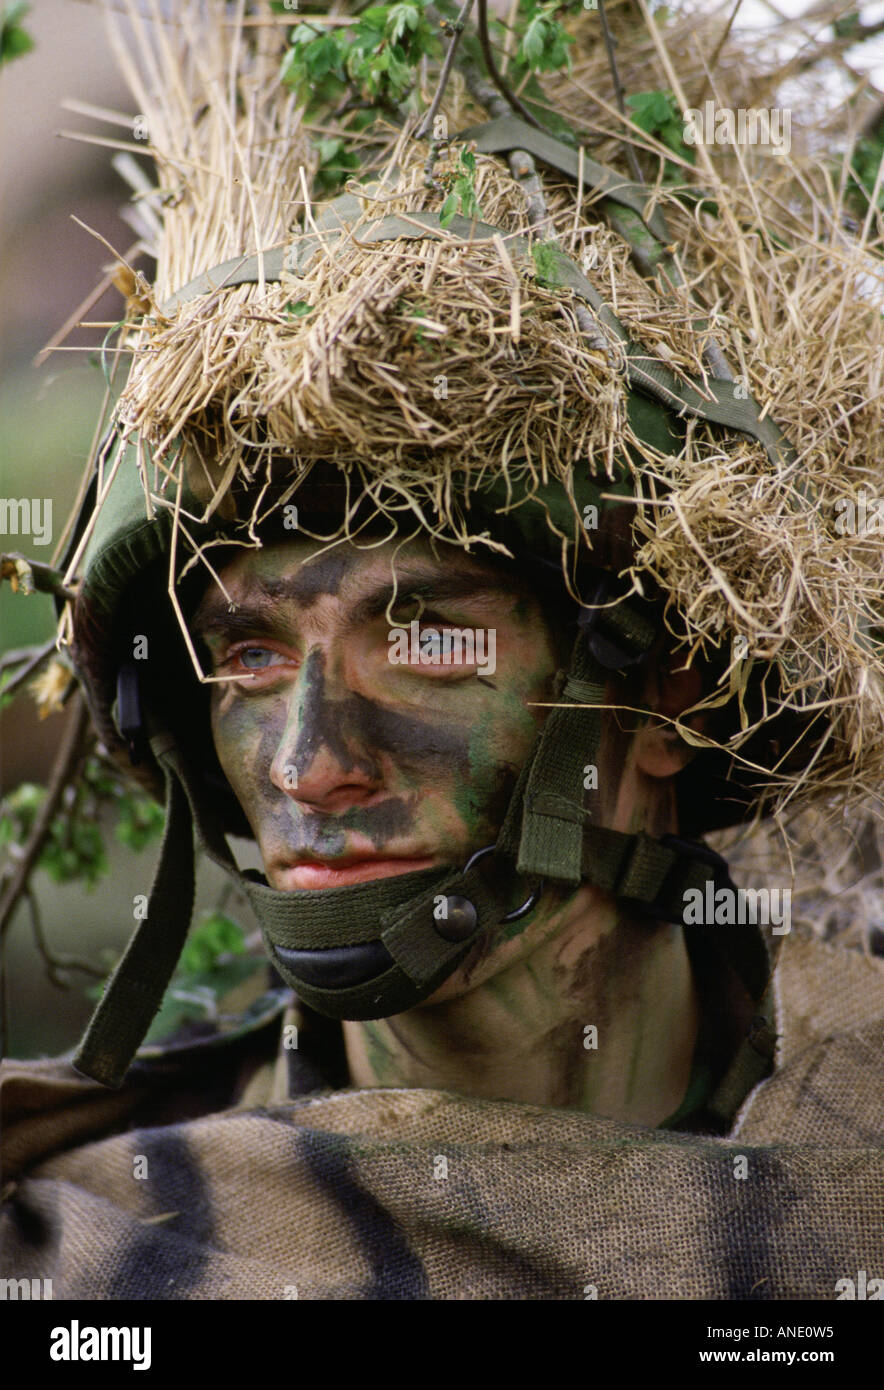 Soldados camuflados fotografías e imágenes de alta resolución - Página 3 -  Alamy